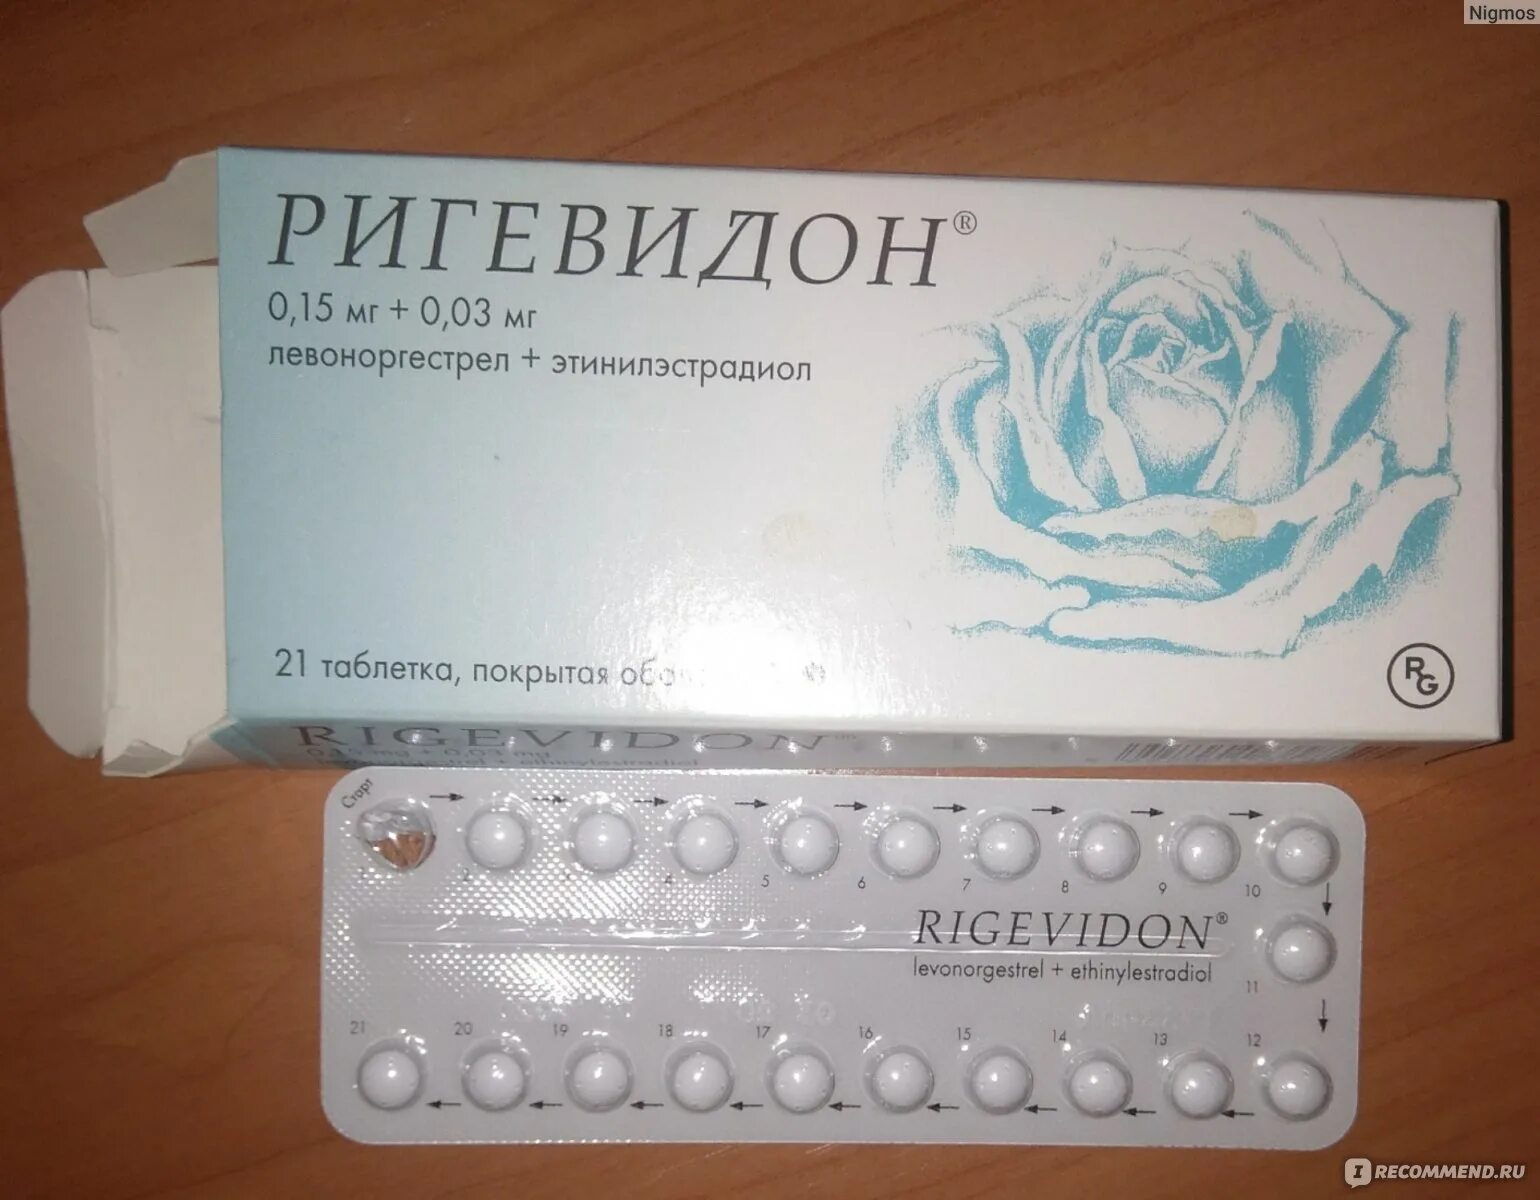 Противозачаточные таблетки ригевидон. Гормональный препарат ригевидон. Противозачаточные таблетки для женщин ригевидон. Таблетки противозачаточные реговидон. Сколько можно пить противозачаточные без перерыва